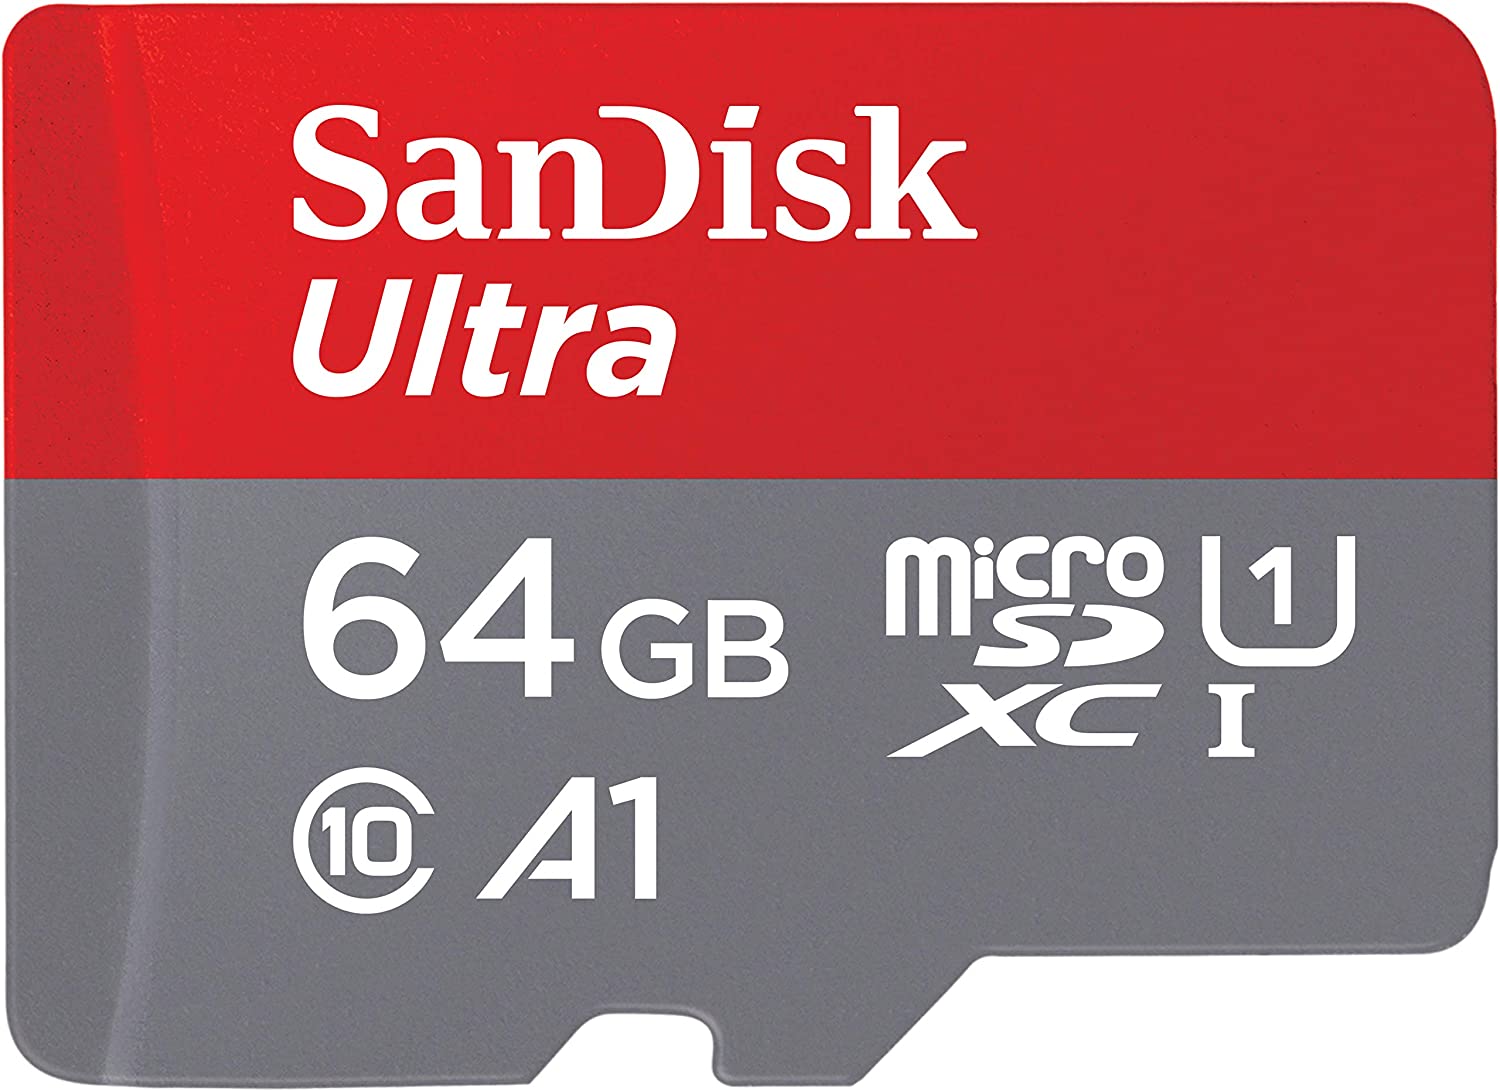 SanDisk 64GB Ultra microSD Card